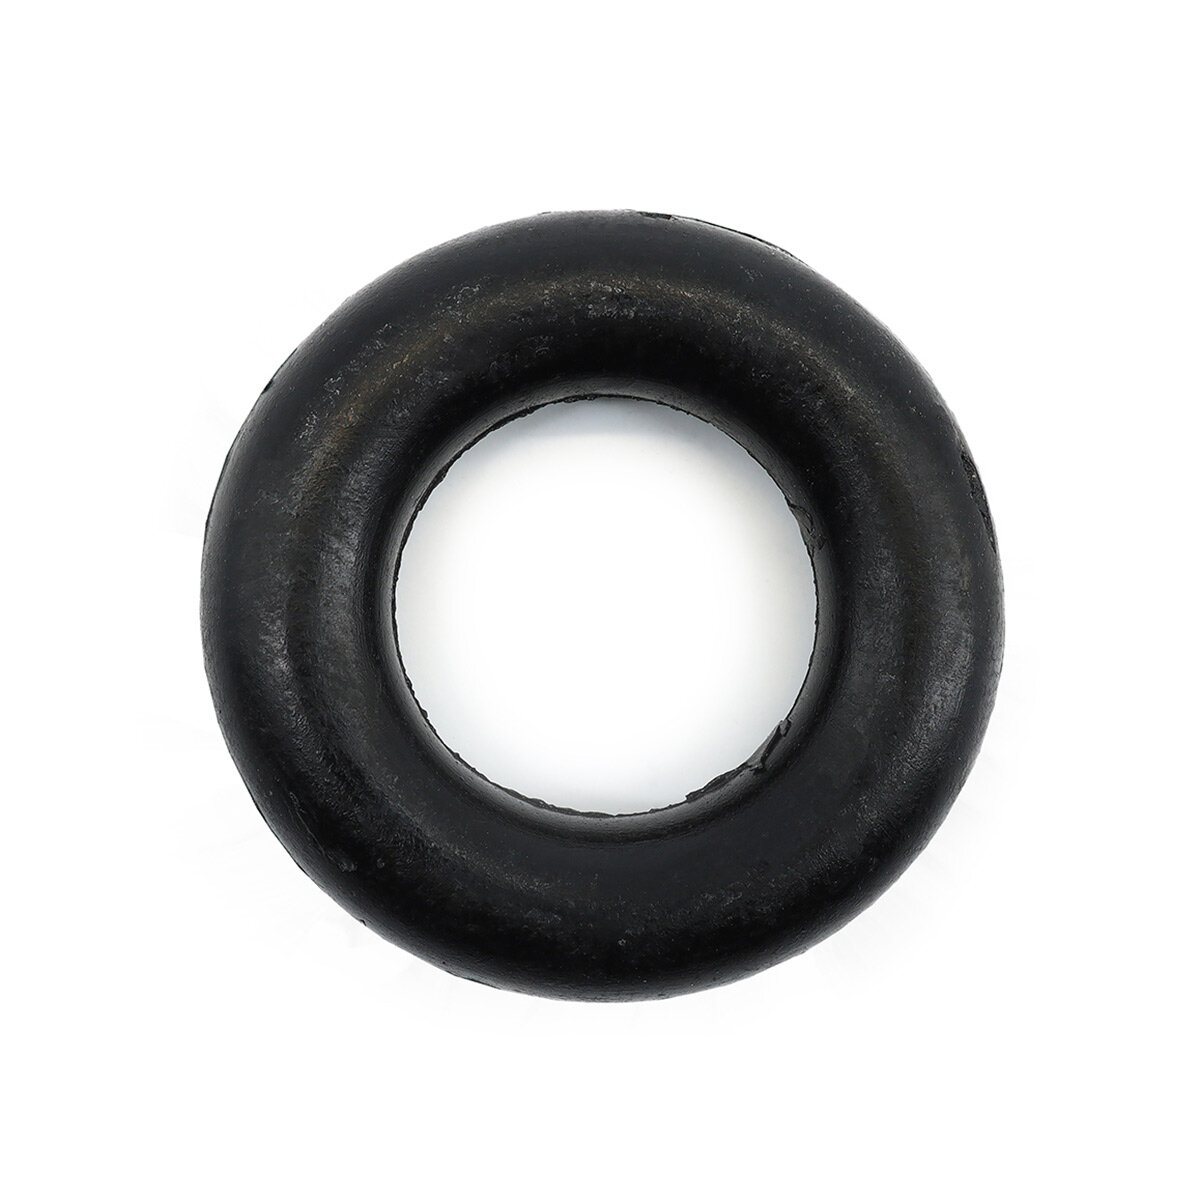 Кольцо на моталку резиновое для бытовых швейных машин, 5 шт